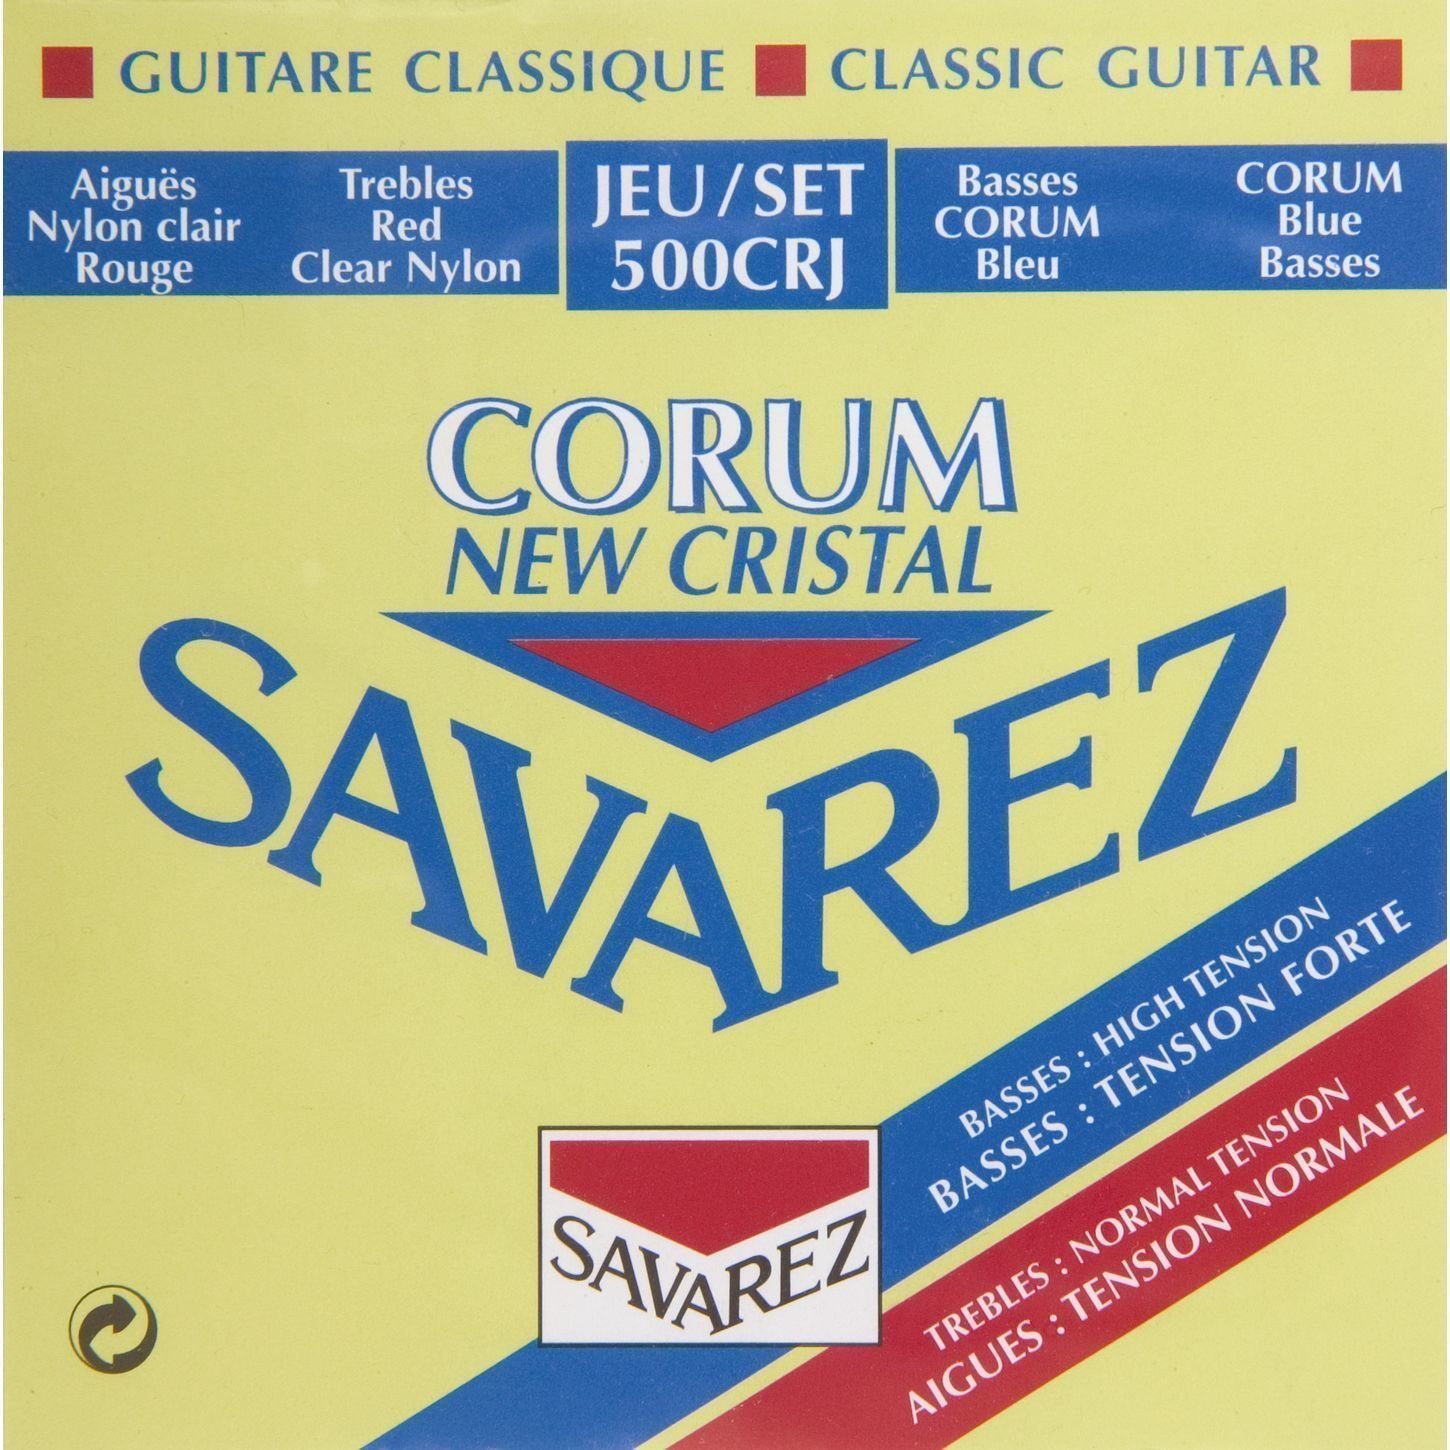 Найлонови струни за класическа китара Savarez 500CRJ Cristal Corum